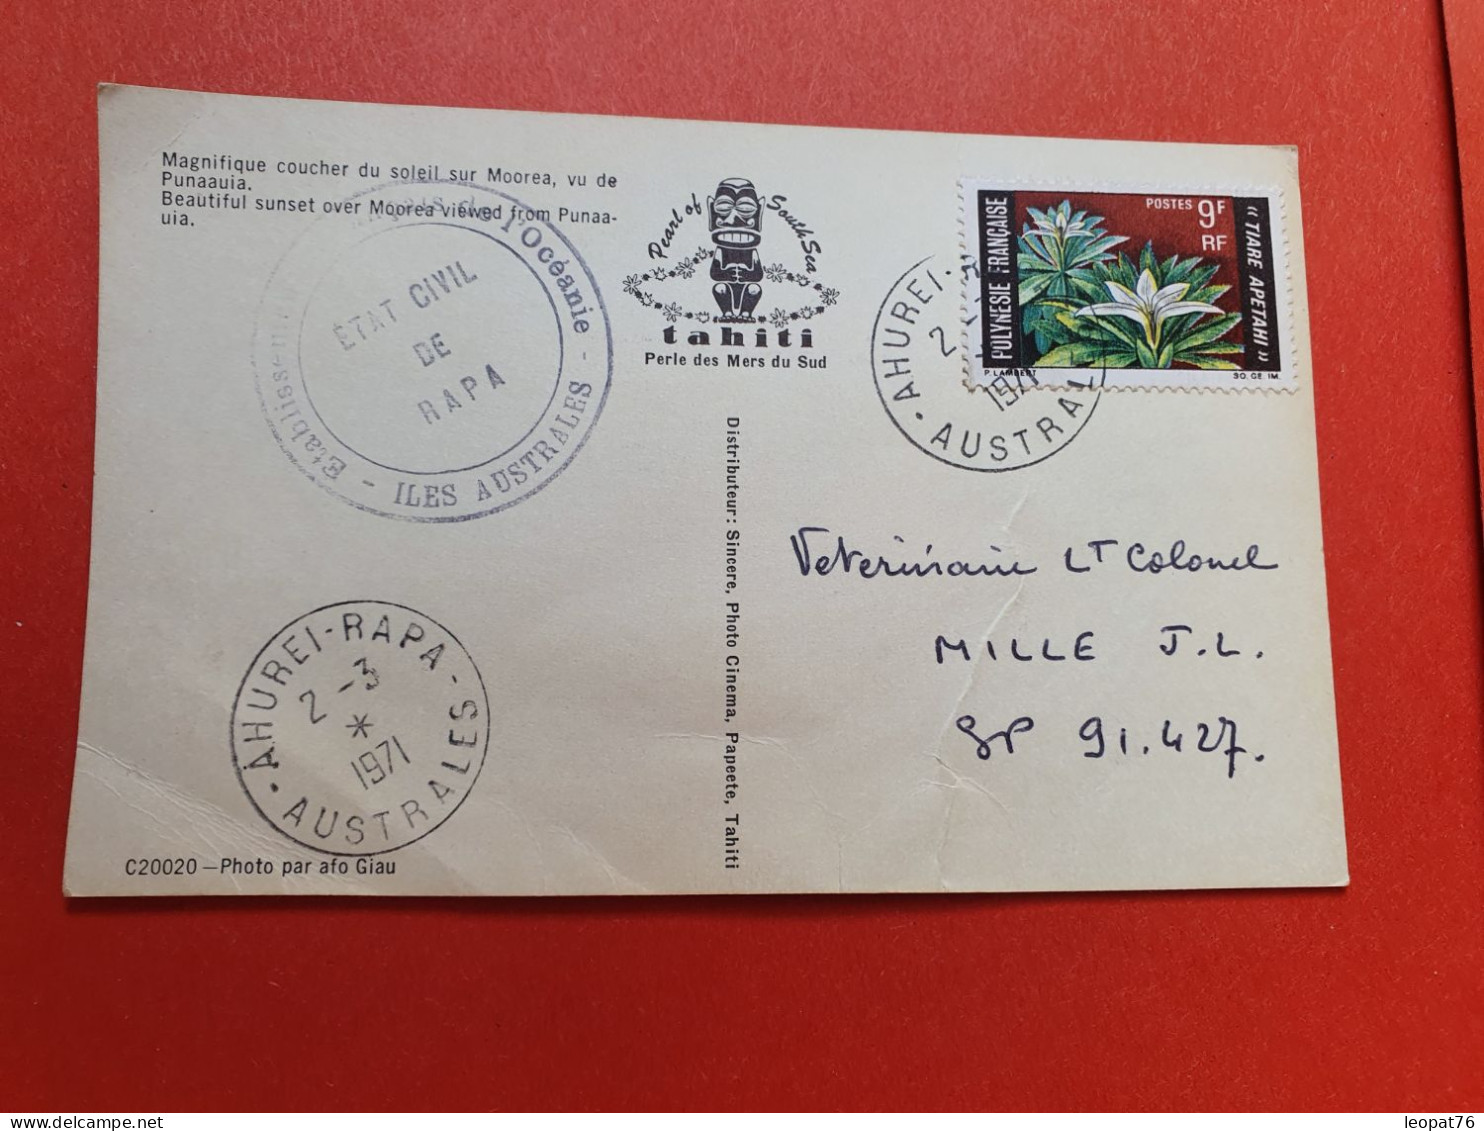 Polynésie - Affranchissement De Ahurei-Rapa Sur Carte Postale Pour SP 91.427 En 1971 - Réf 869 - Neufs